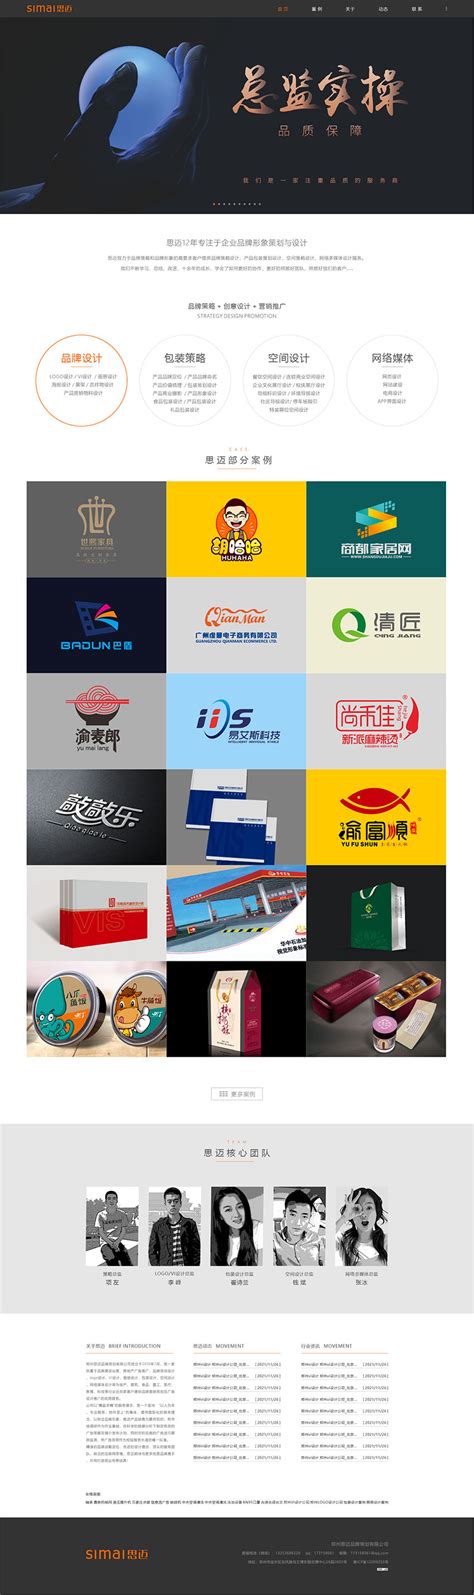 郑州网站品牌设计制作